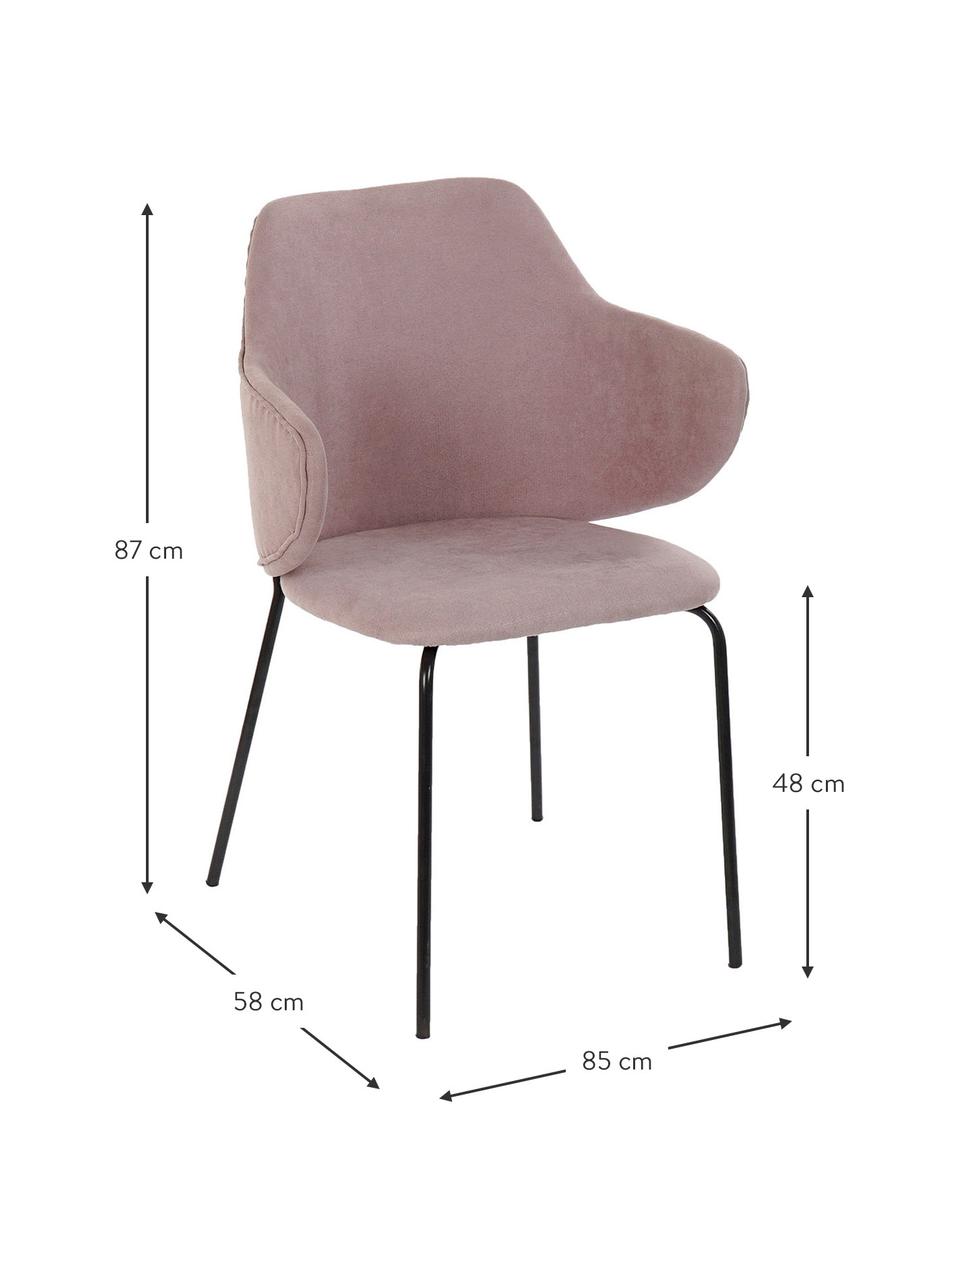 Židle s područkami Debbie, Růžová, krémově bílá